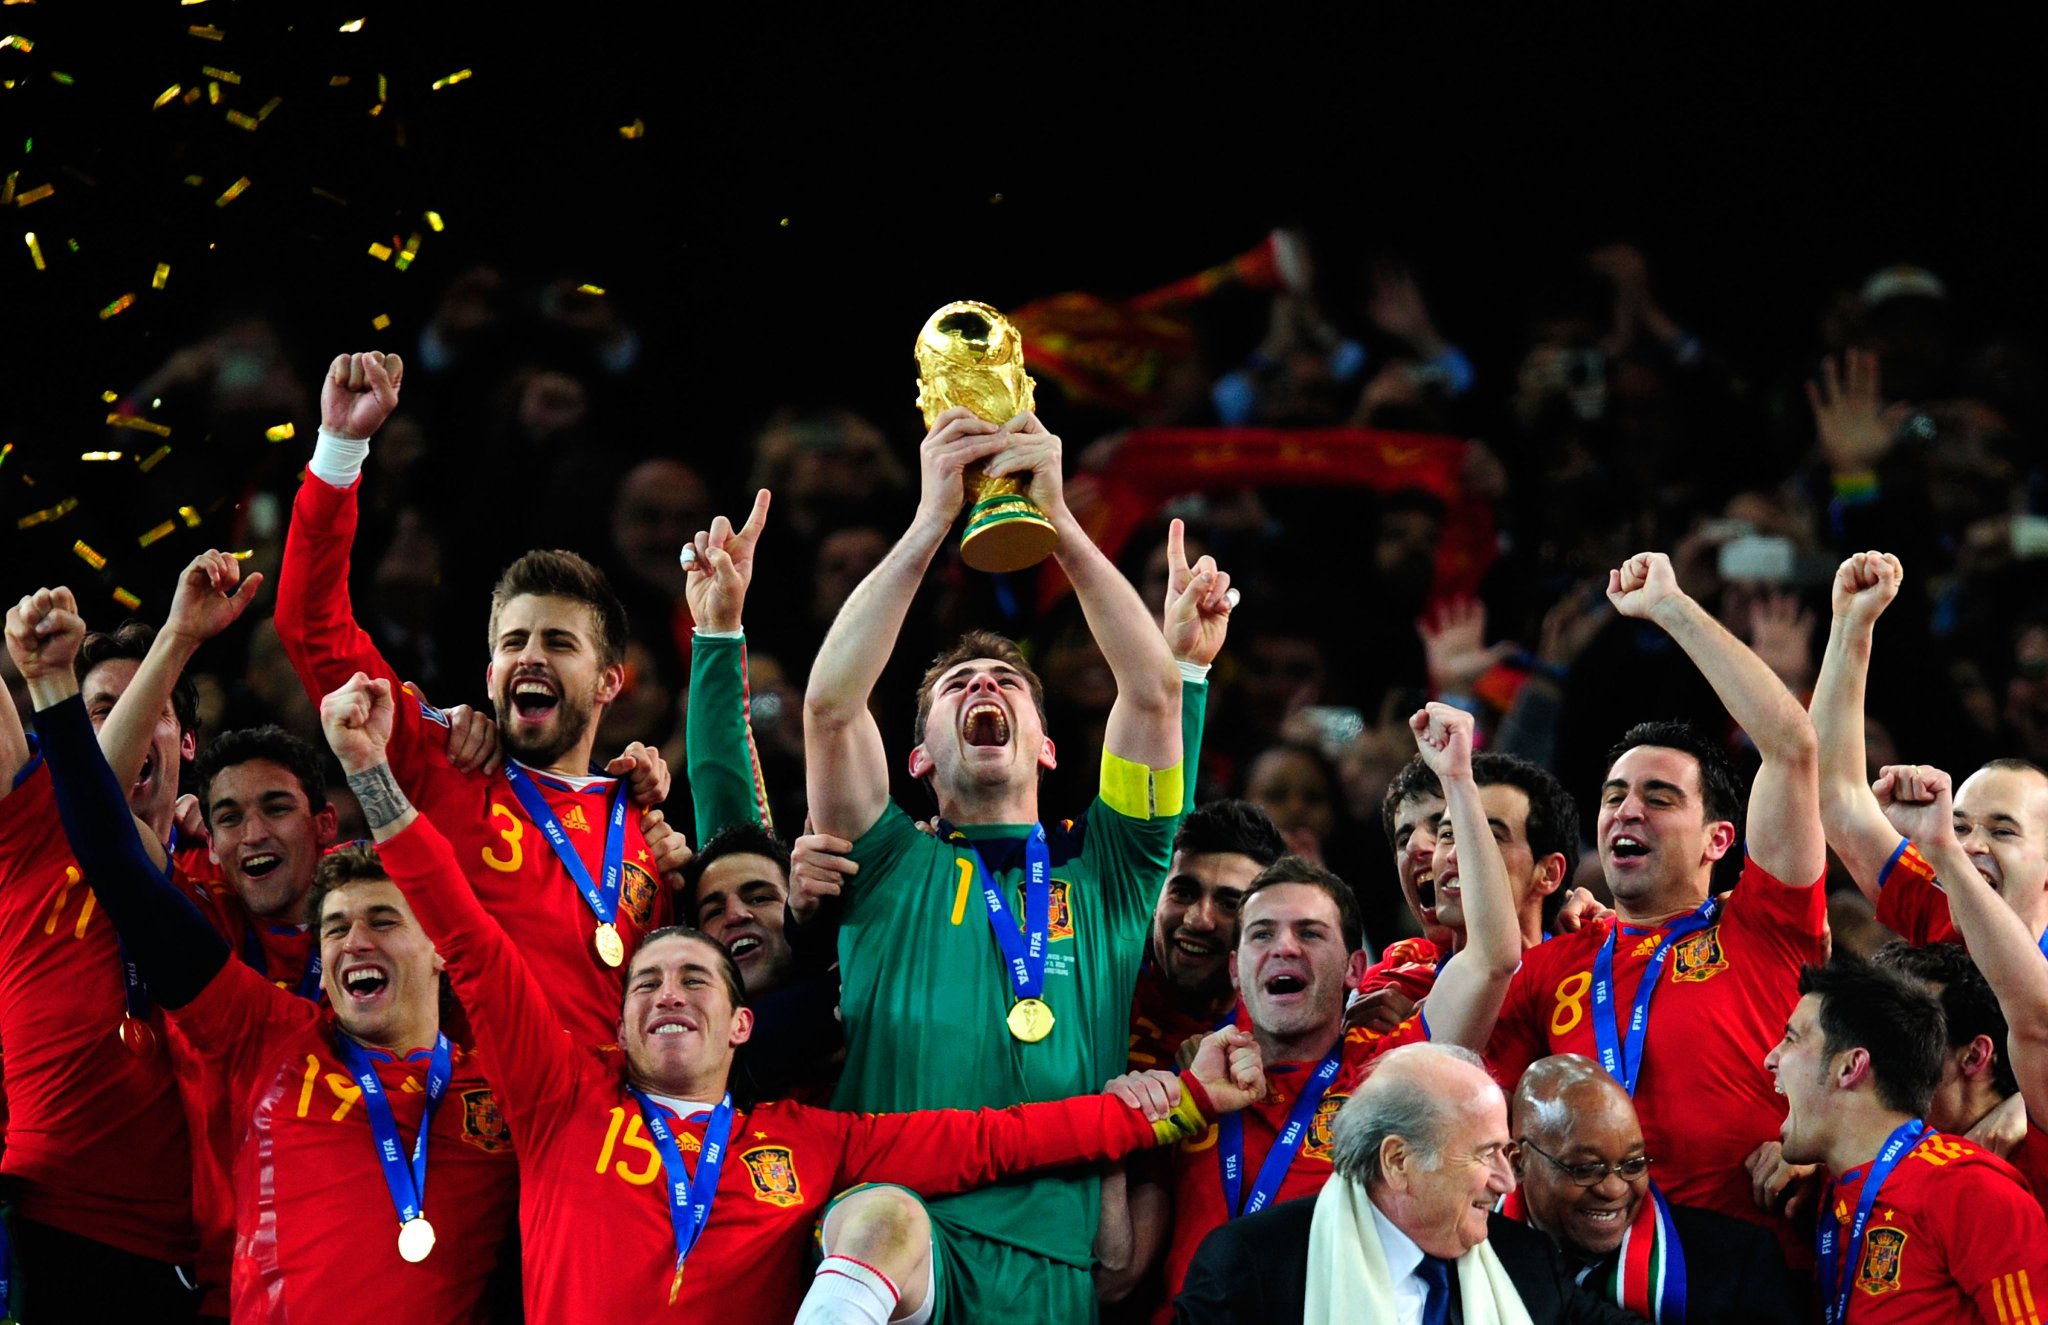   in 1981, a Spain legend was born...  Happy birthday, Iker Casillas    